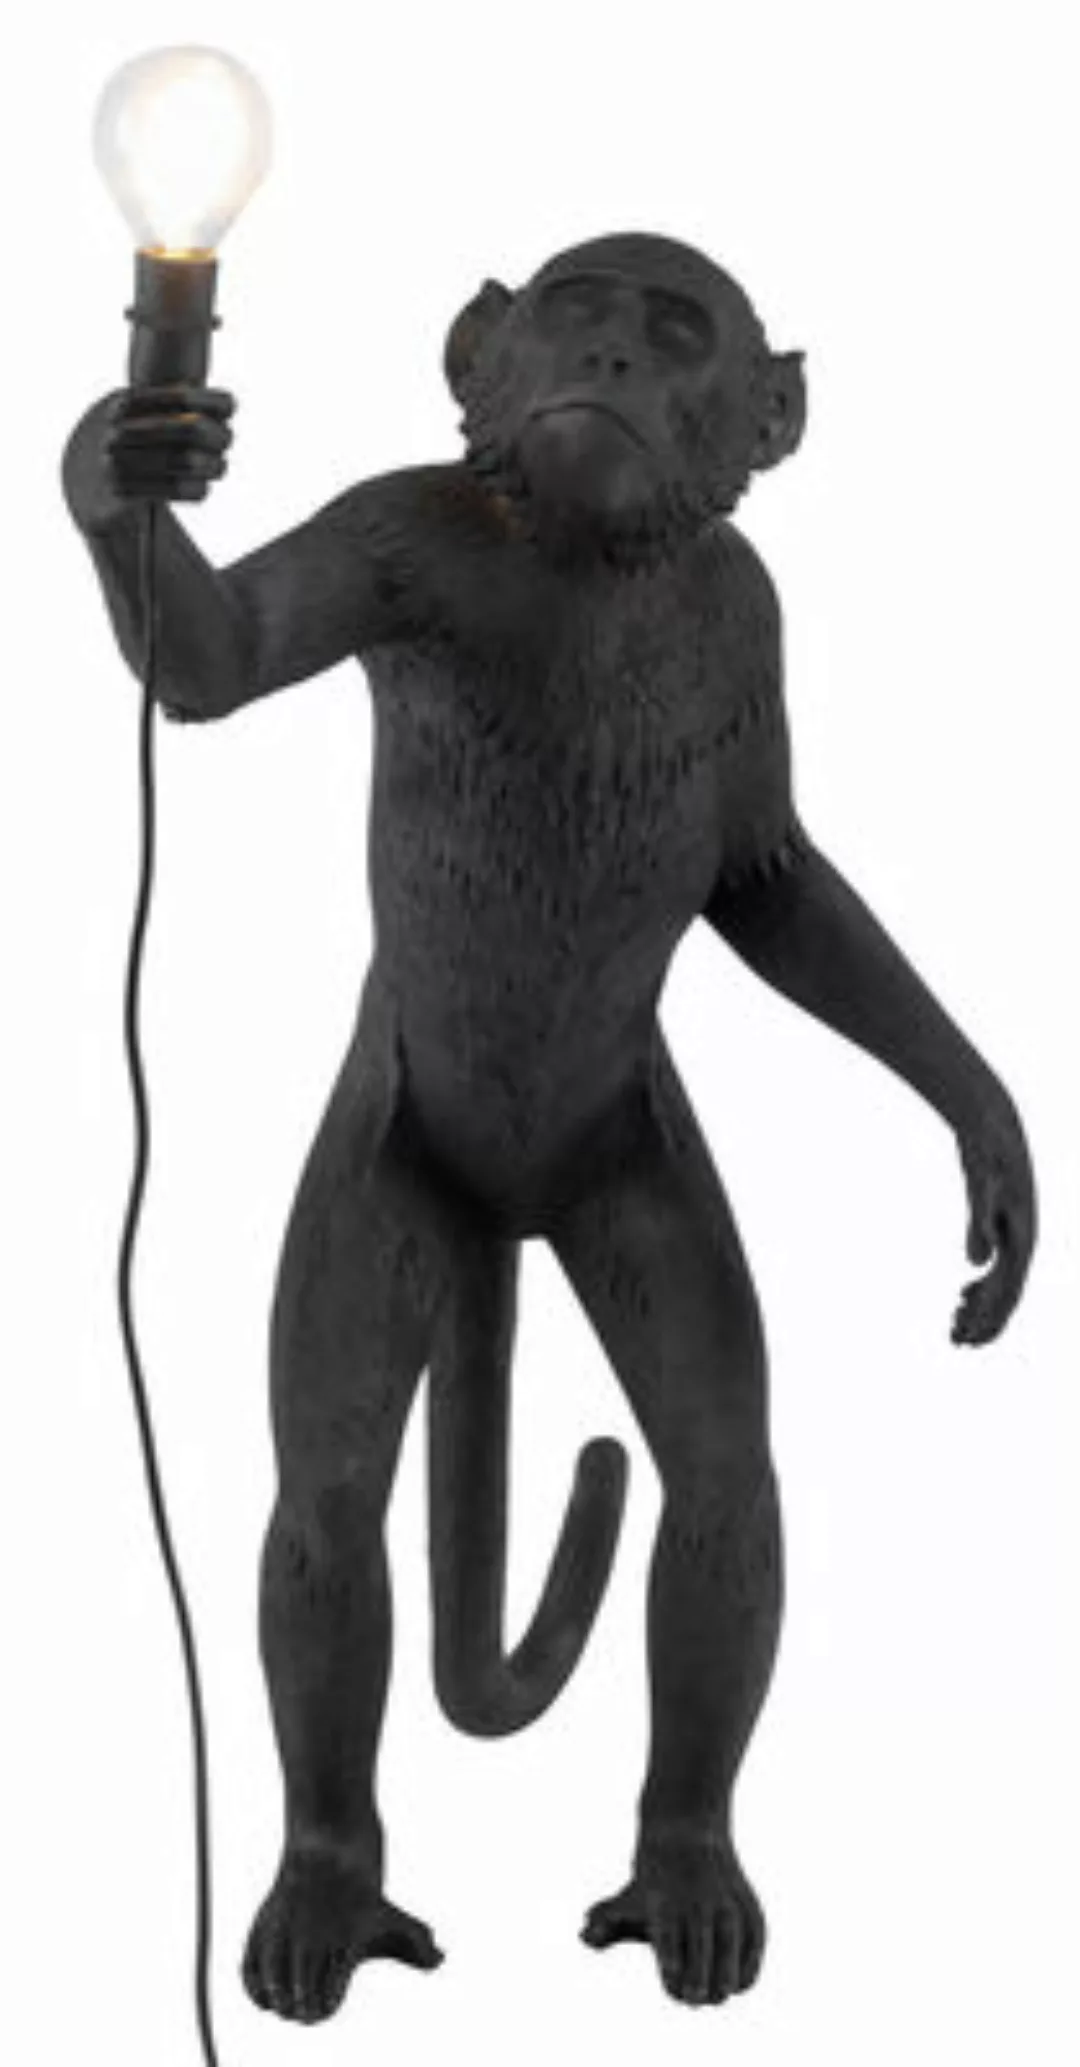 Outdoorlampe Monkey Standing plastikmaterial schwarz / outdoorgeeignet - H günstig online kaufen